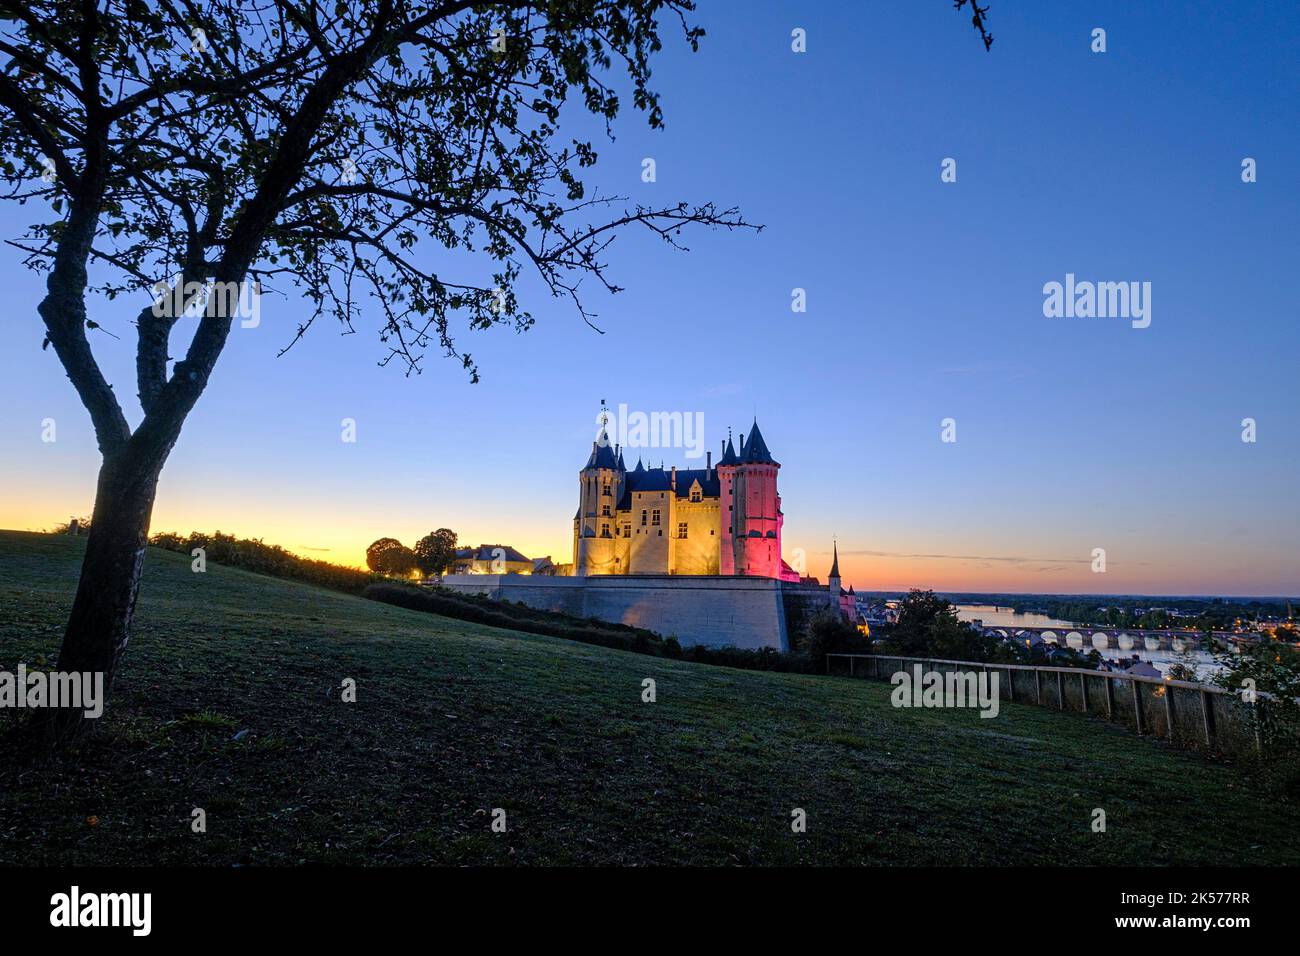 France, Maine et loire, Vallée de la Loire site classé au patrimoine mondial de l'UNESCO, Saumur, château de Saumur le long de la Loire Banque D'Images